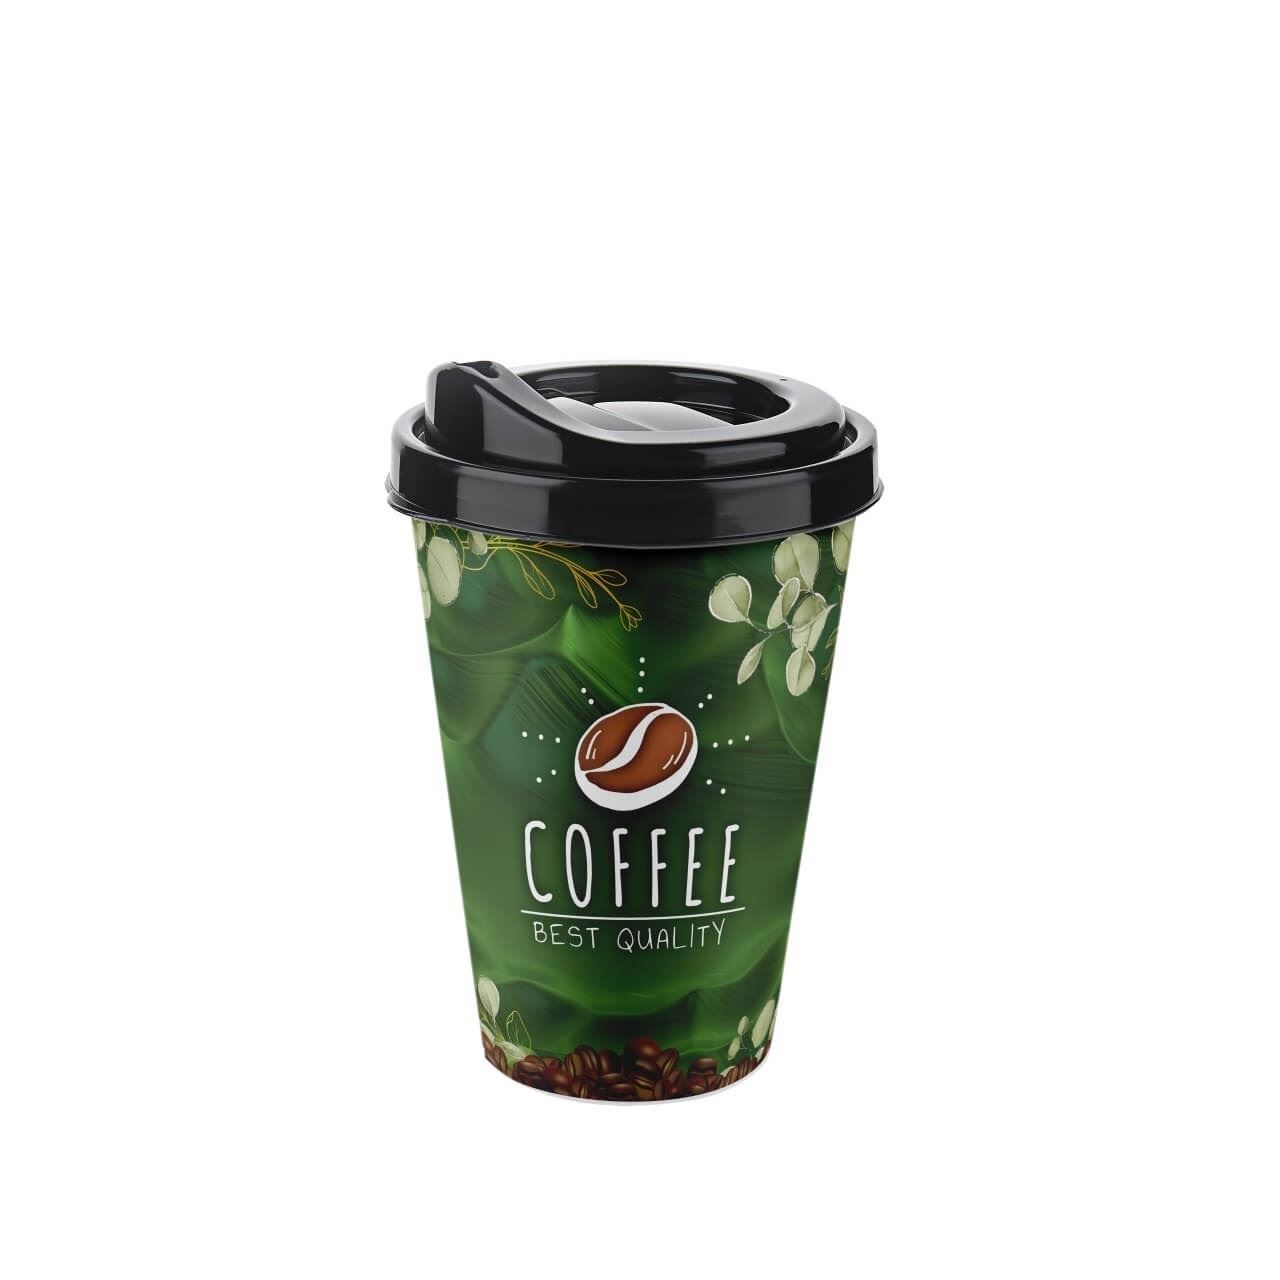 لیوان کافی 3 بعدی سایز کوچک مدل Coffee Cup برند تیتیز پلاستیک ترکیه در ۴ طرح مختلف _ شناسه کالا : AP_9122